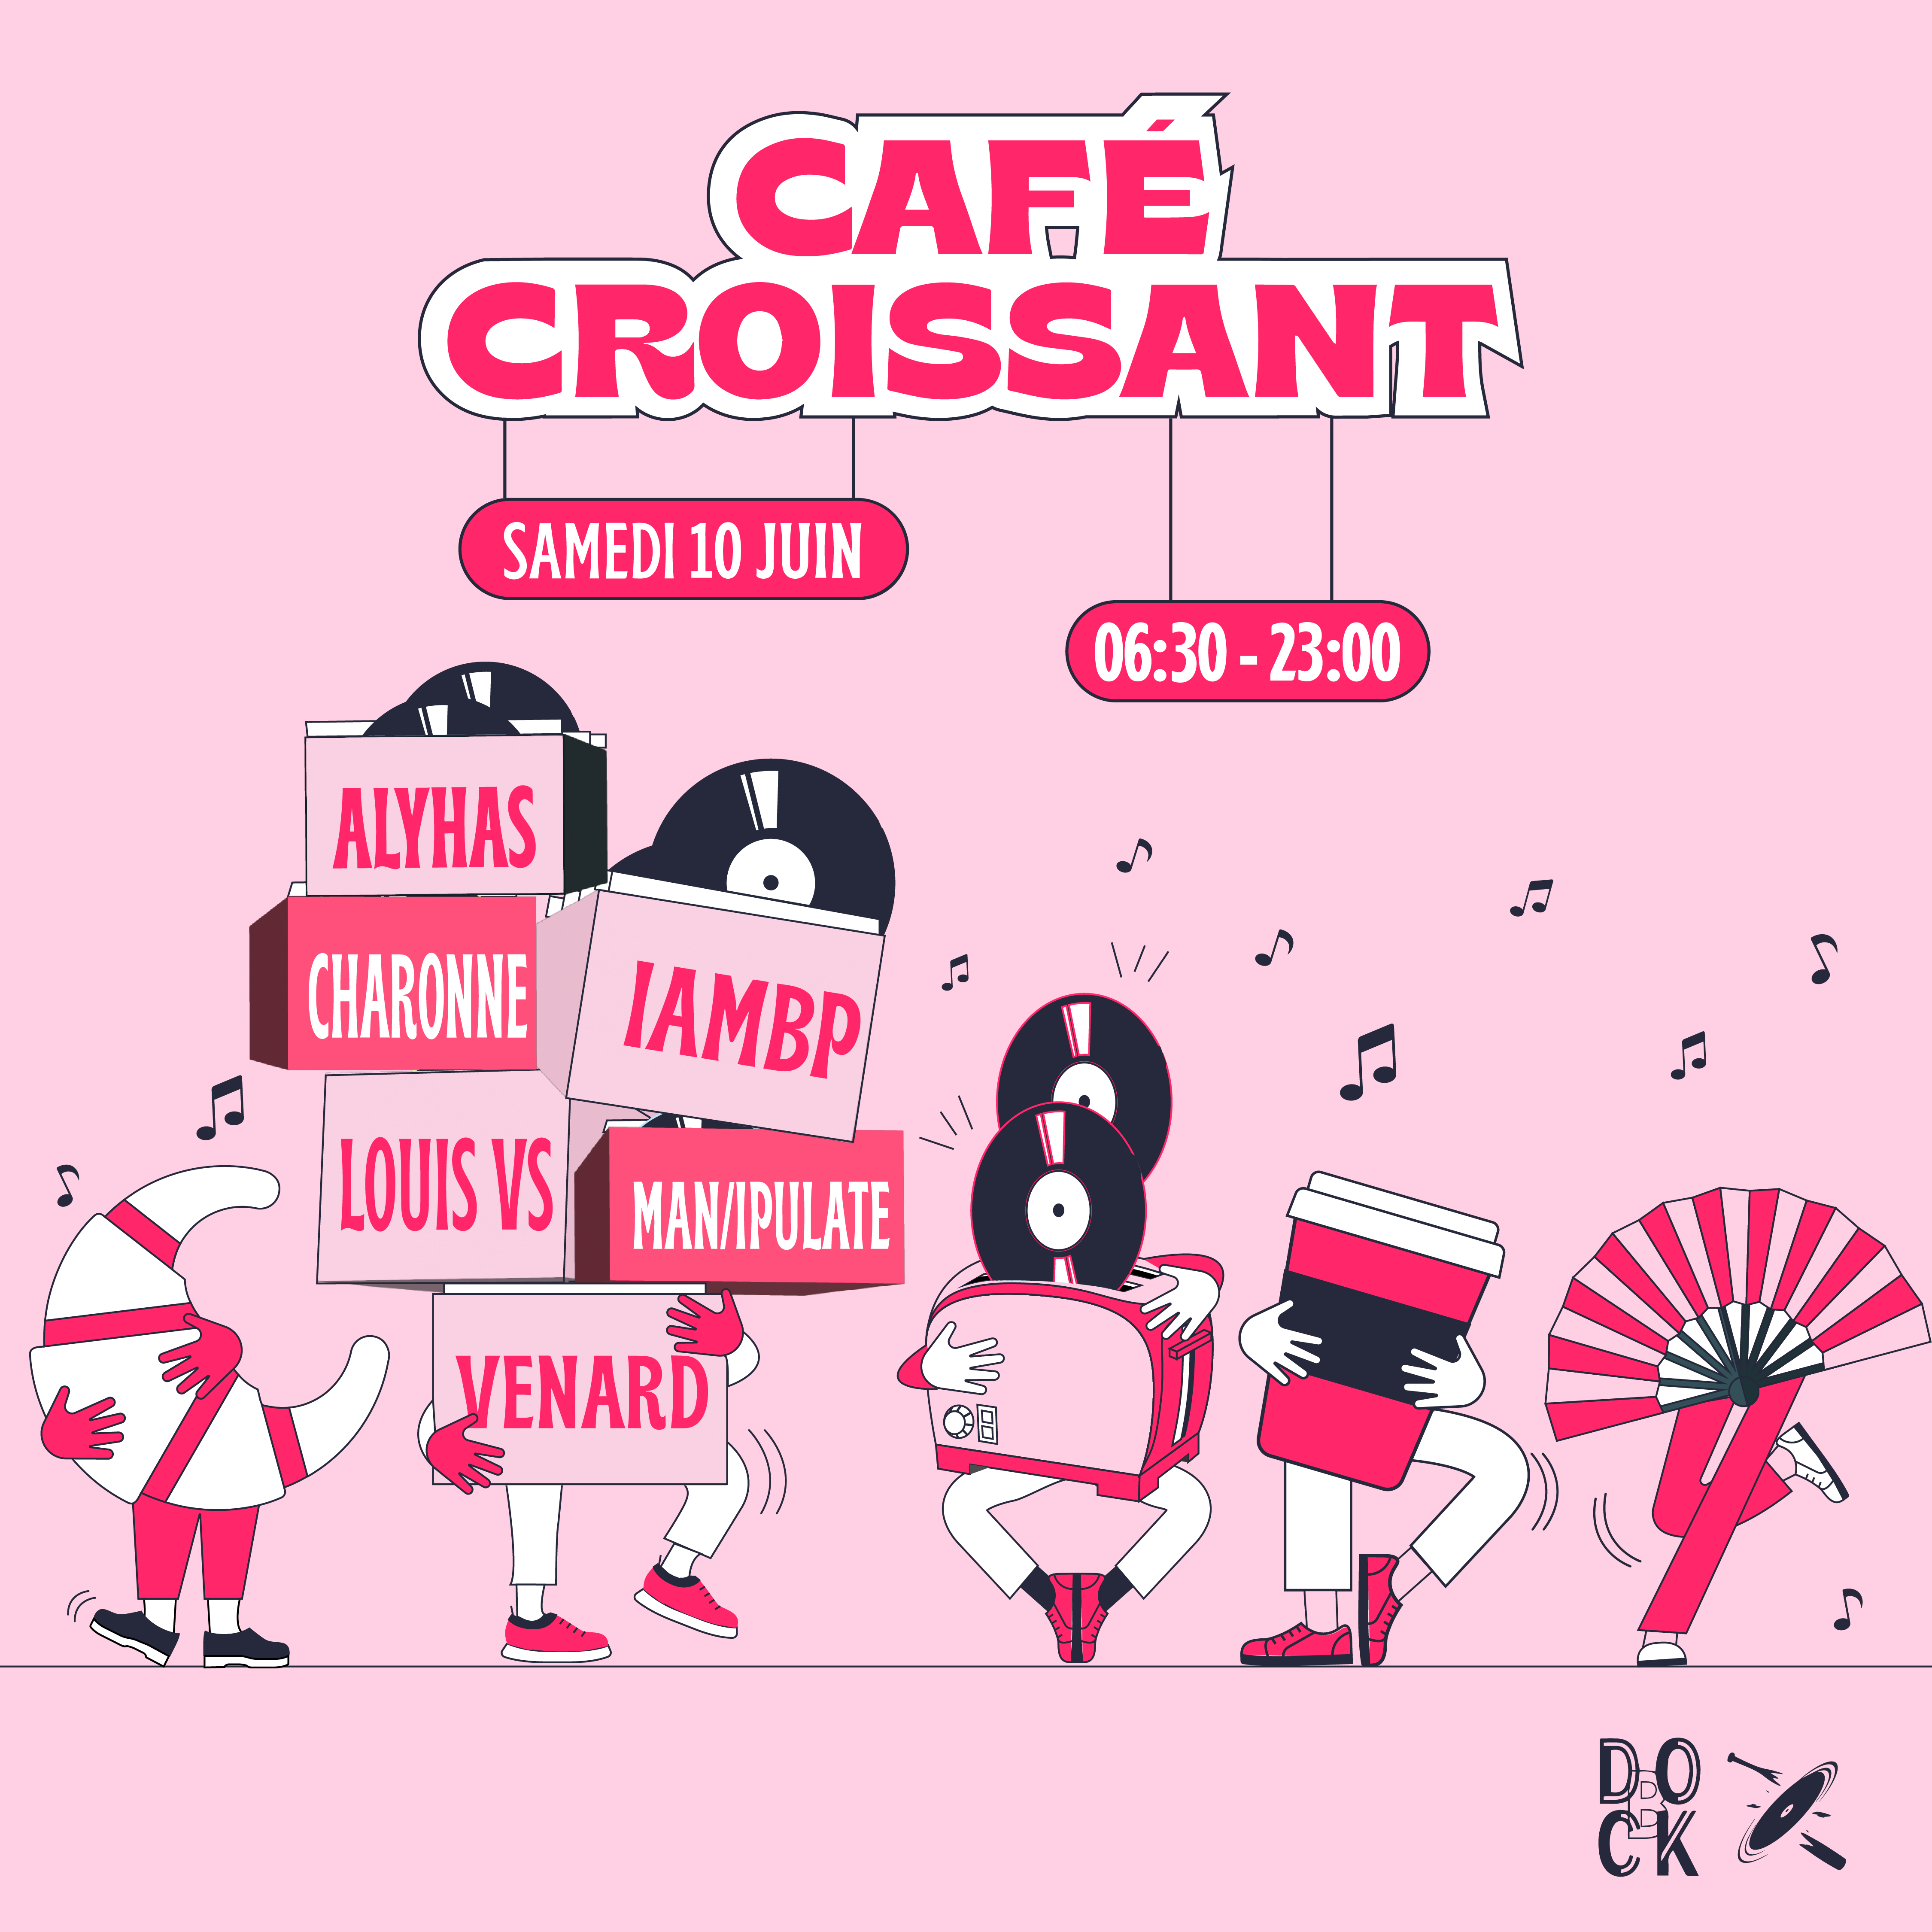 Café Croissant ±  Man/ipulate – Secret Guest – Venard – IAMBP – Louis VS – Alyhas ± Increase the Groove